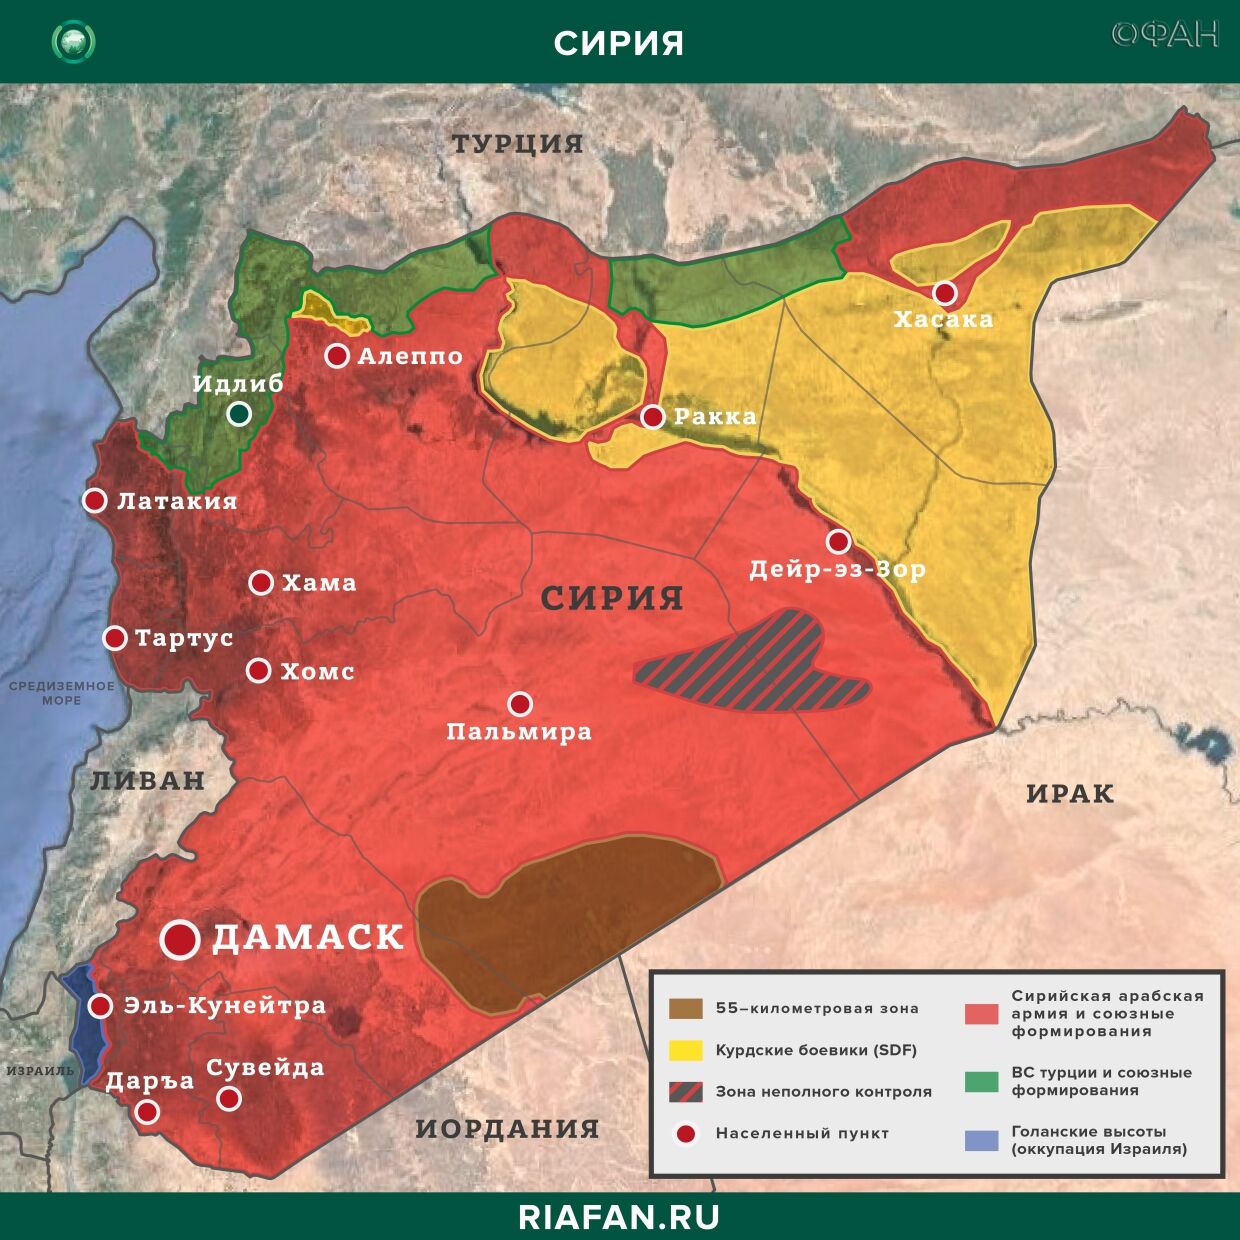 Nouvelles de Syrie 27 Mars 22.30: Турция провела патрулирование на шоссе М-4, жители Камышлы отказались пропустить конвой США